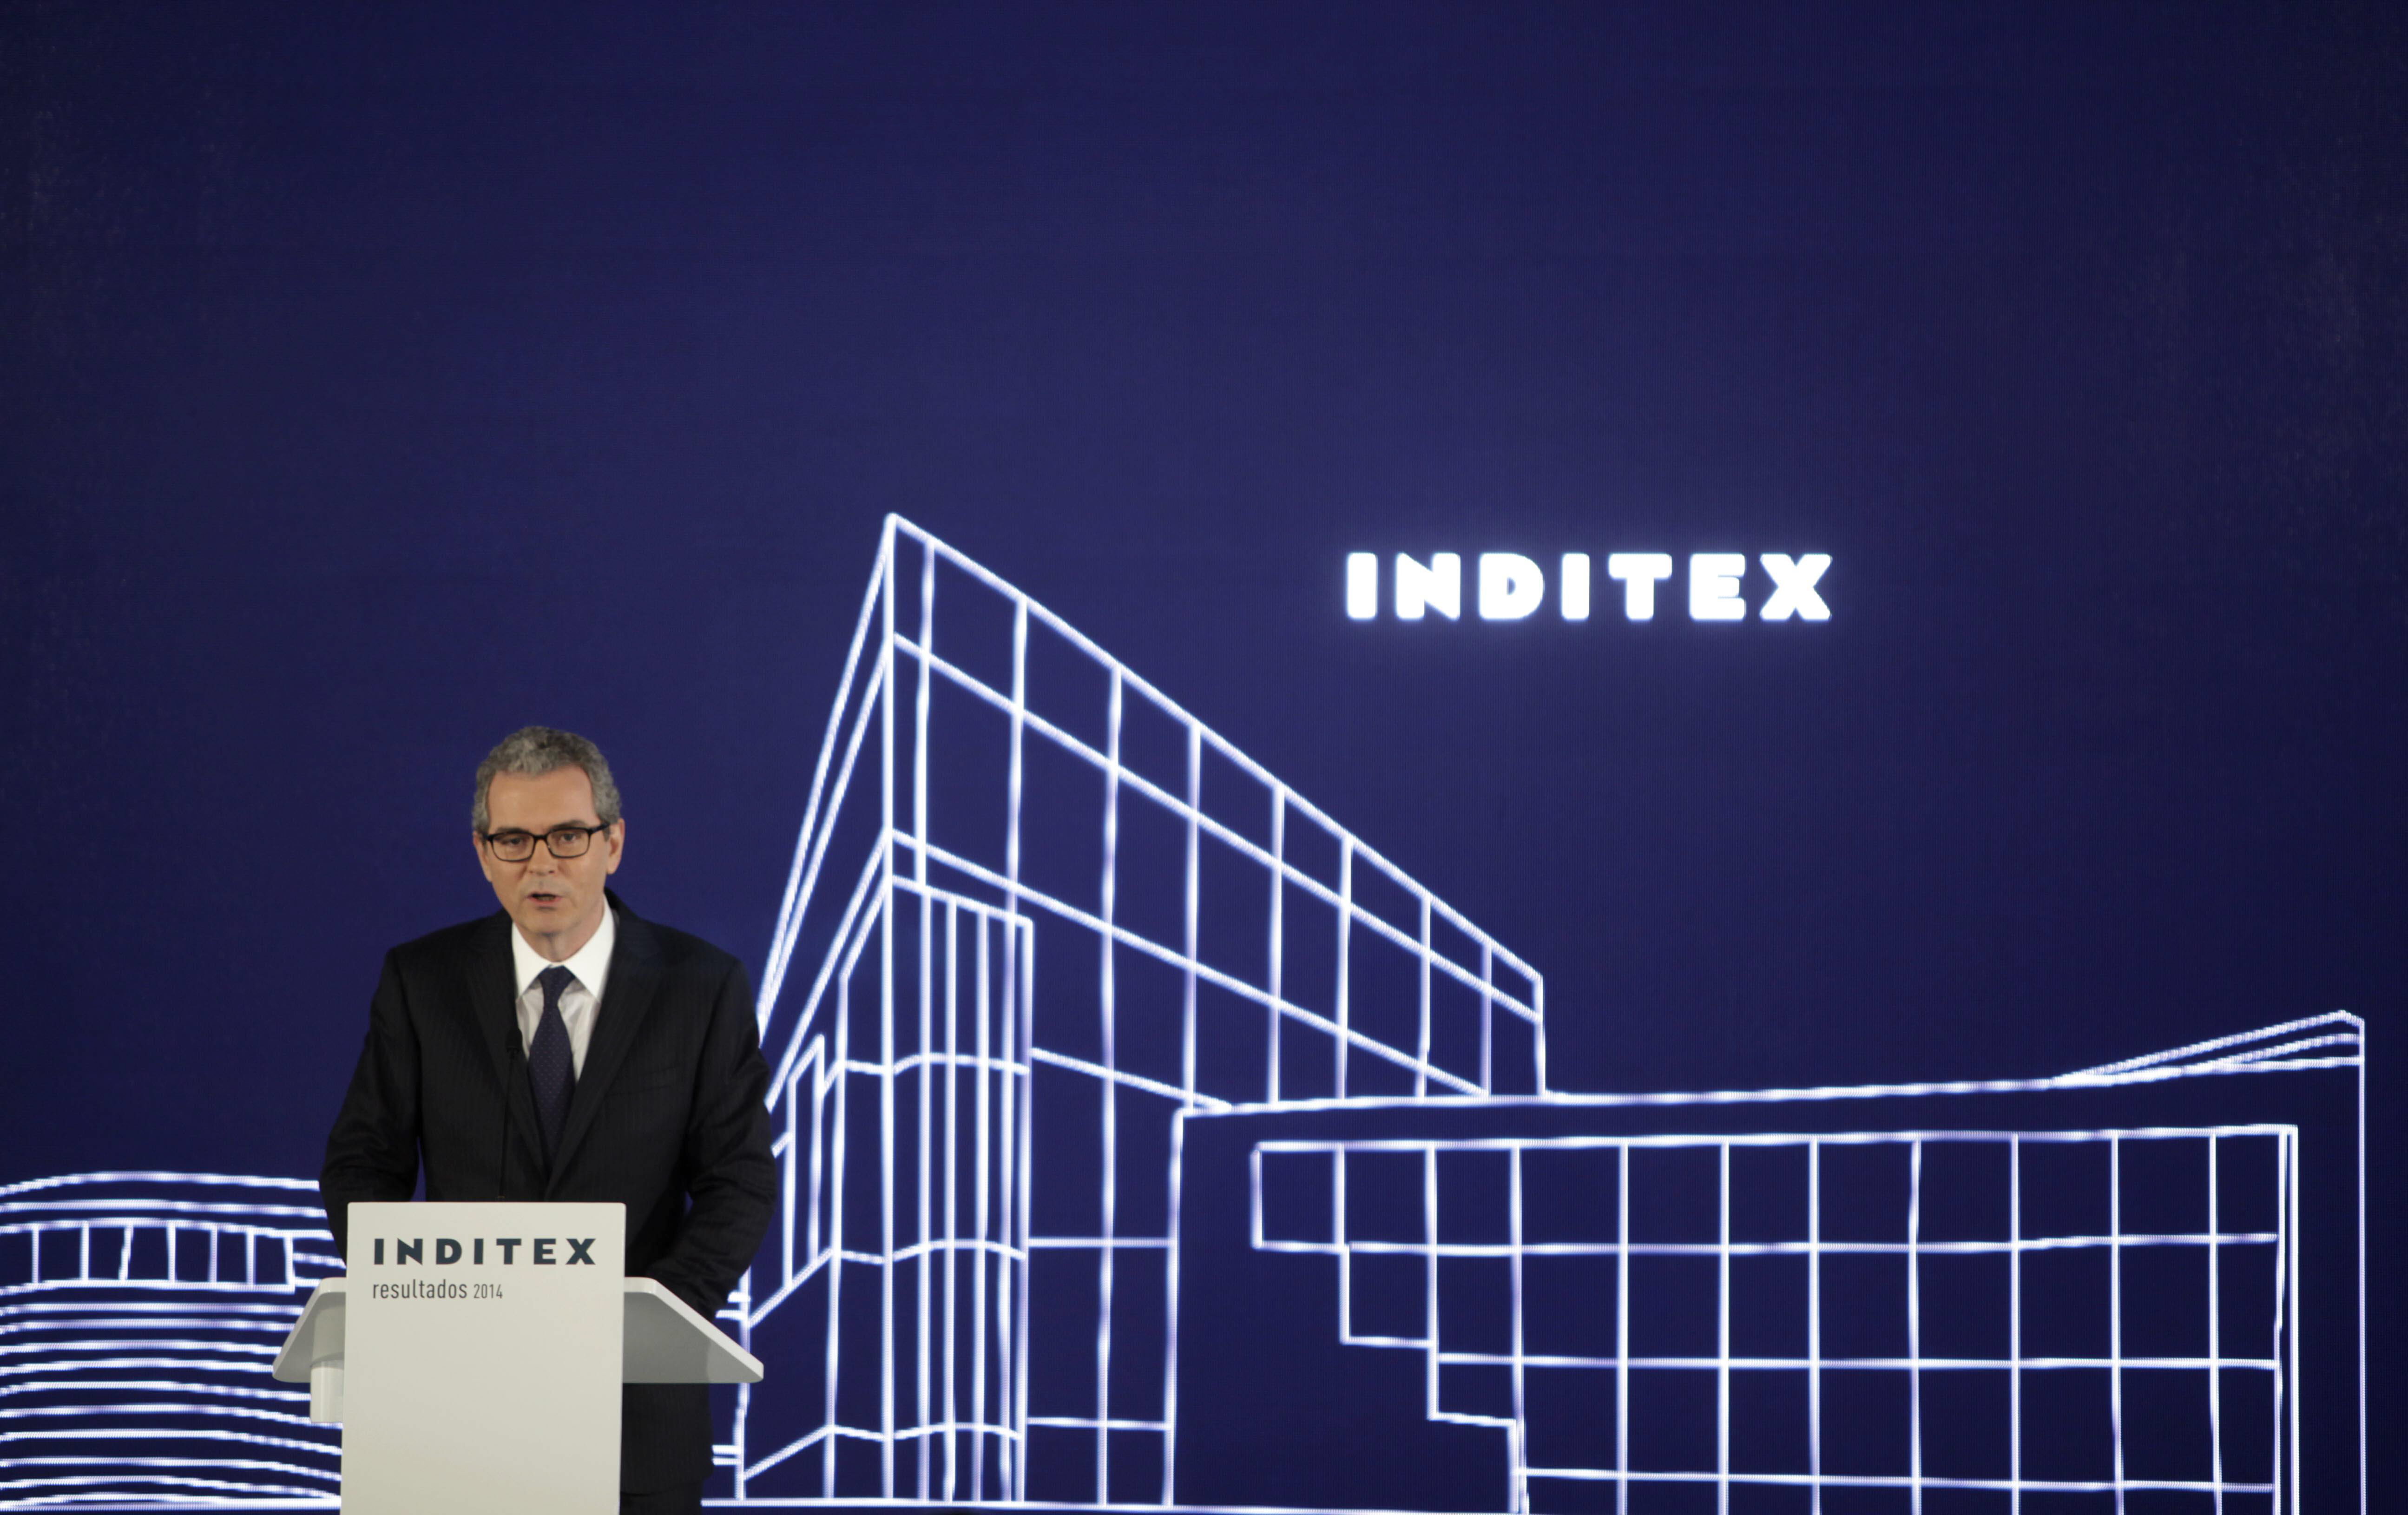 El presidente de Inditex, Pablo Isla, durante una rueda de prensa ofrecida en Arteixo